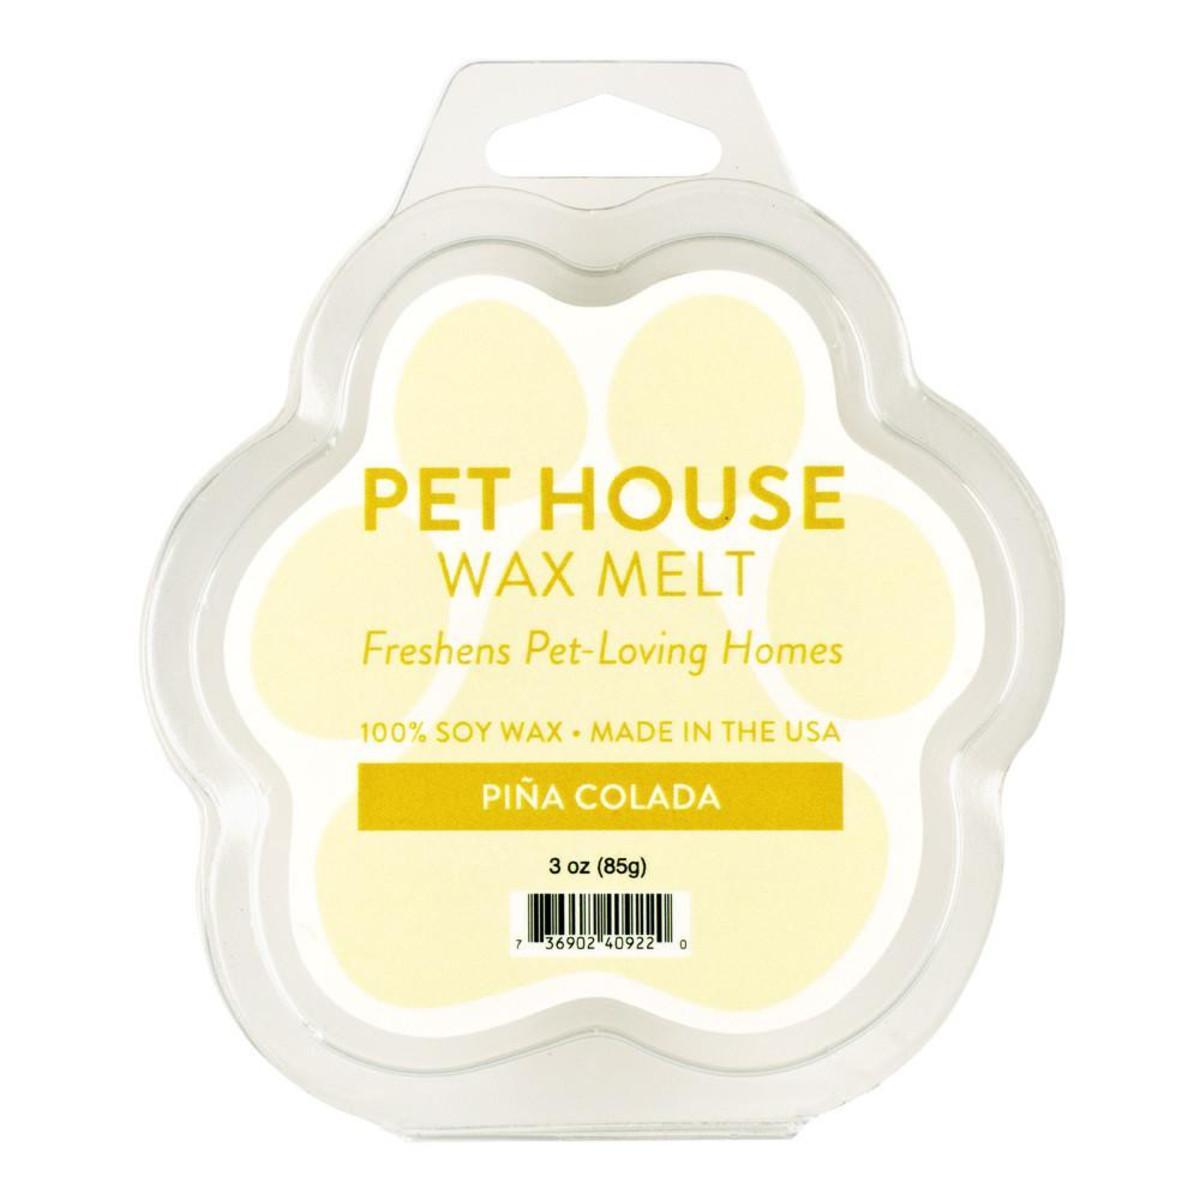 Pet House Pina Colada Wax Melt